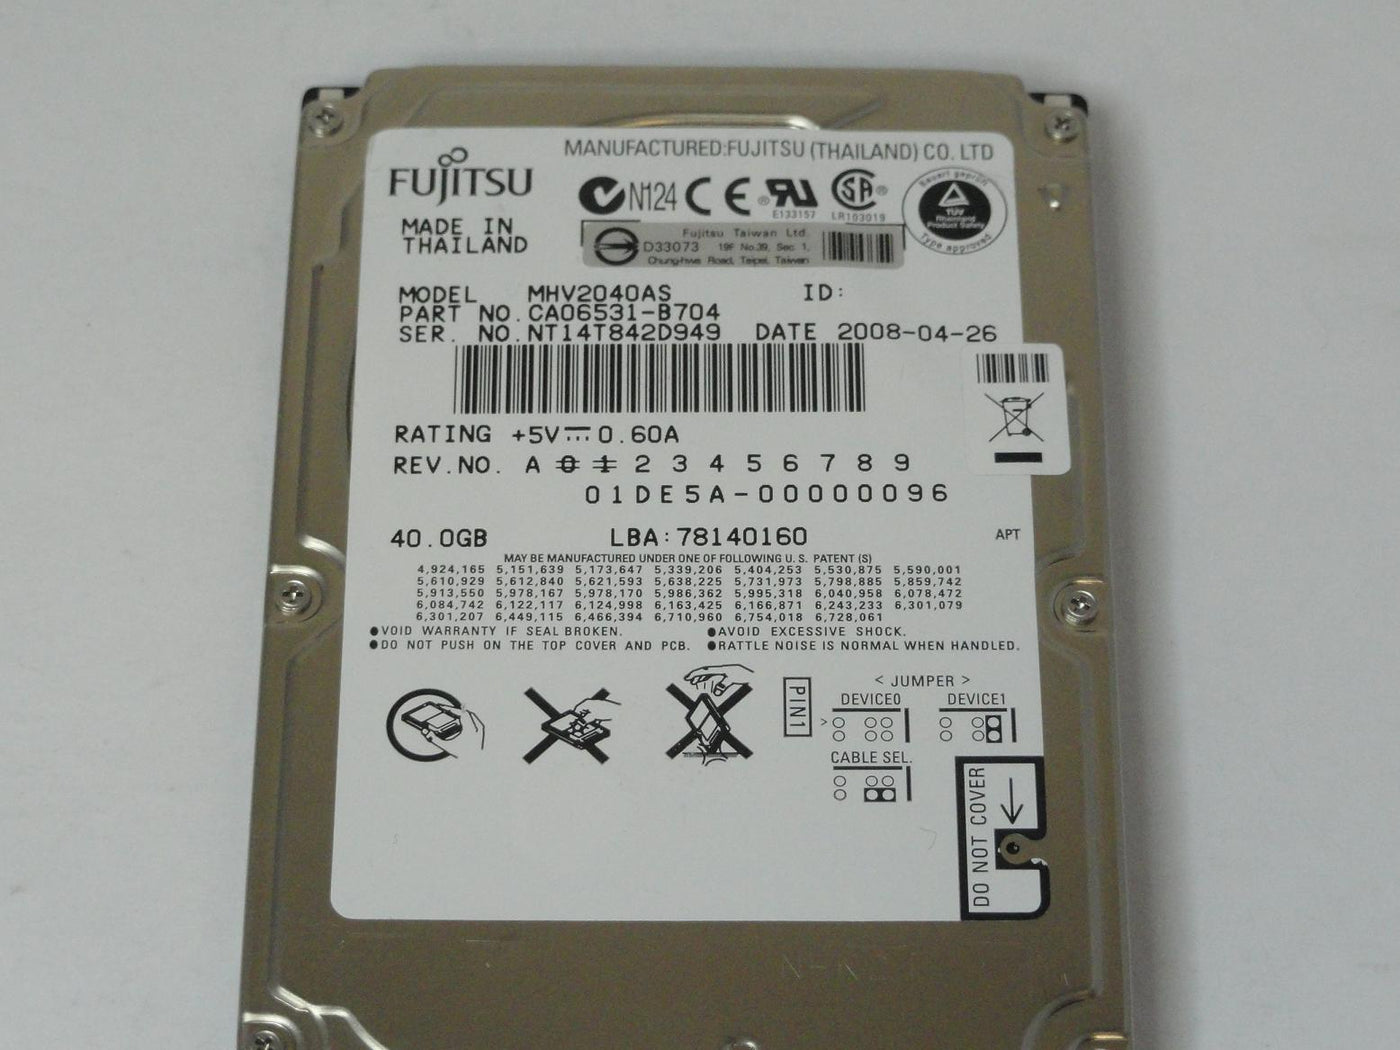 MC4297_CA06377-B11400DL_Fujitsu 40GB IDE 5400rpm 2.5in HDD - Image3